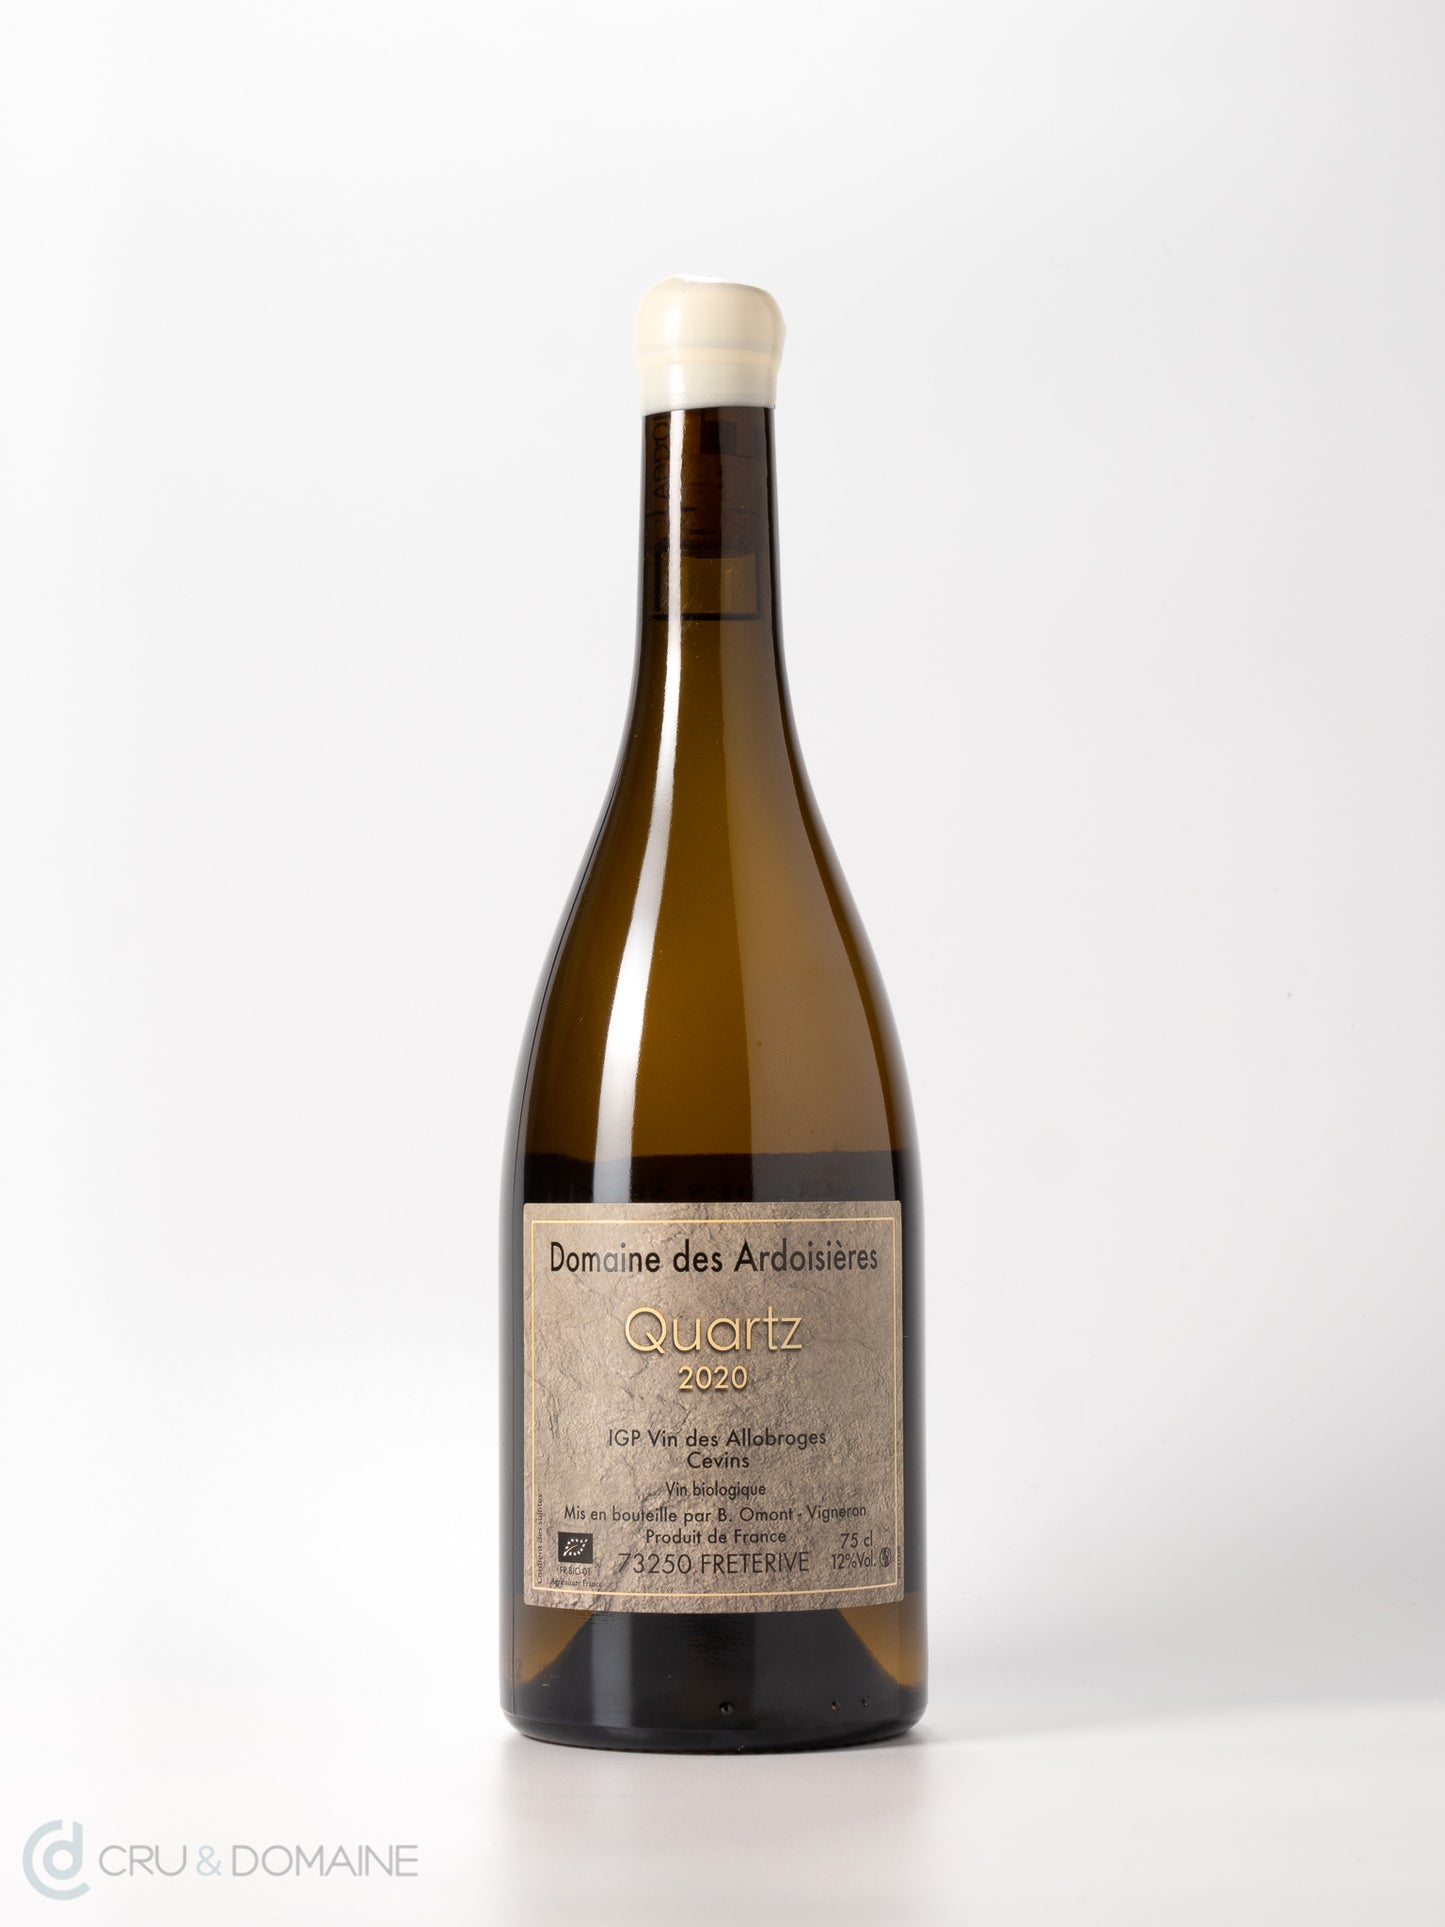 2020 Domaine des Ardoisieres, 'Quartz', IGP Vin des Allobroges, Savoie, France